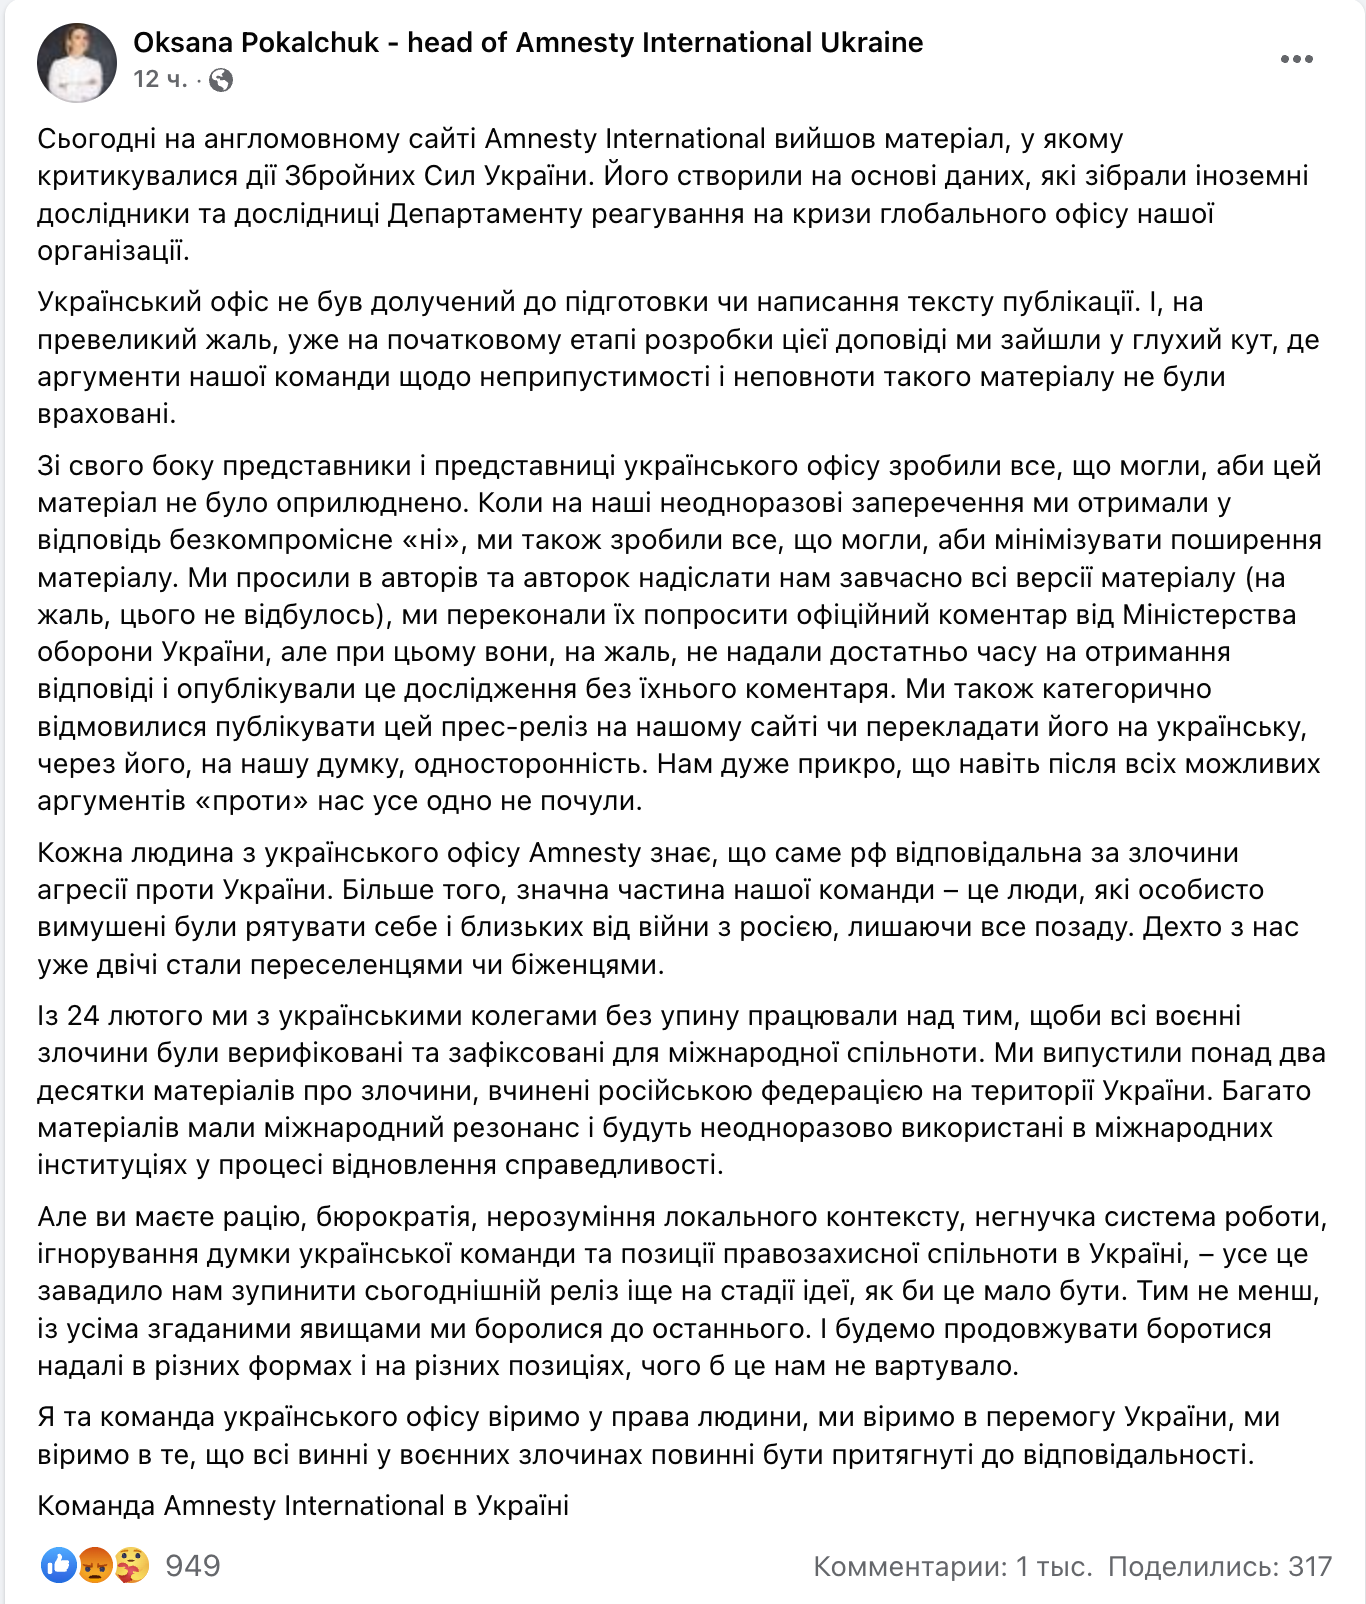 Скриншот поста главы украинского офиса Amnesty International Оксаны Покальчук